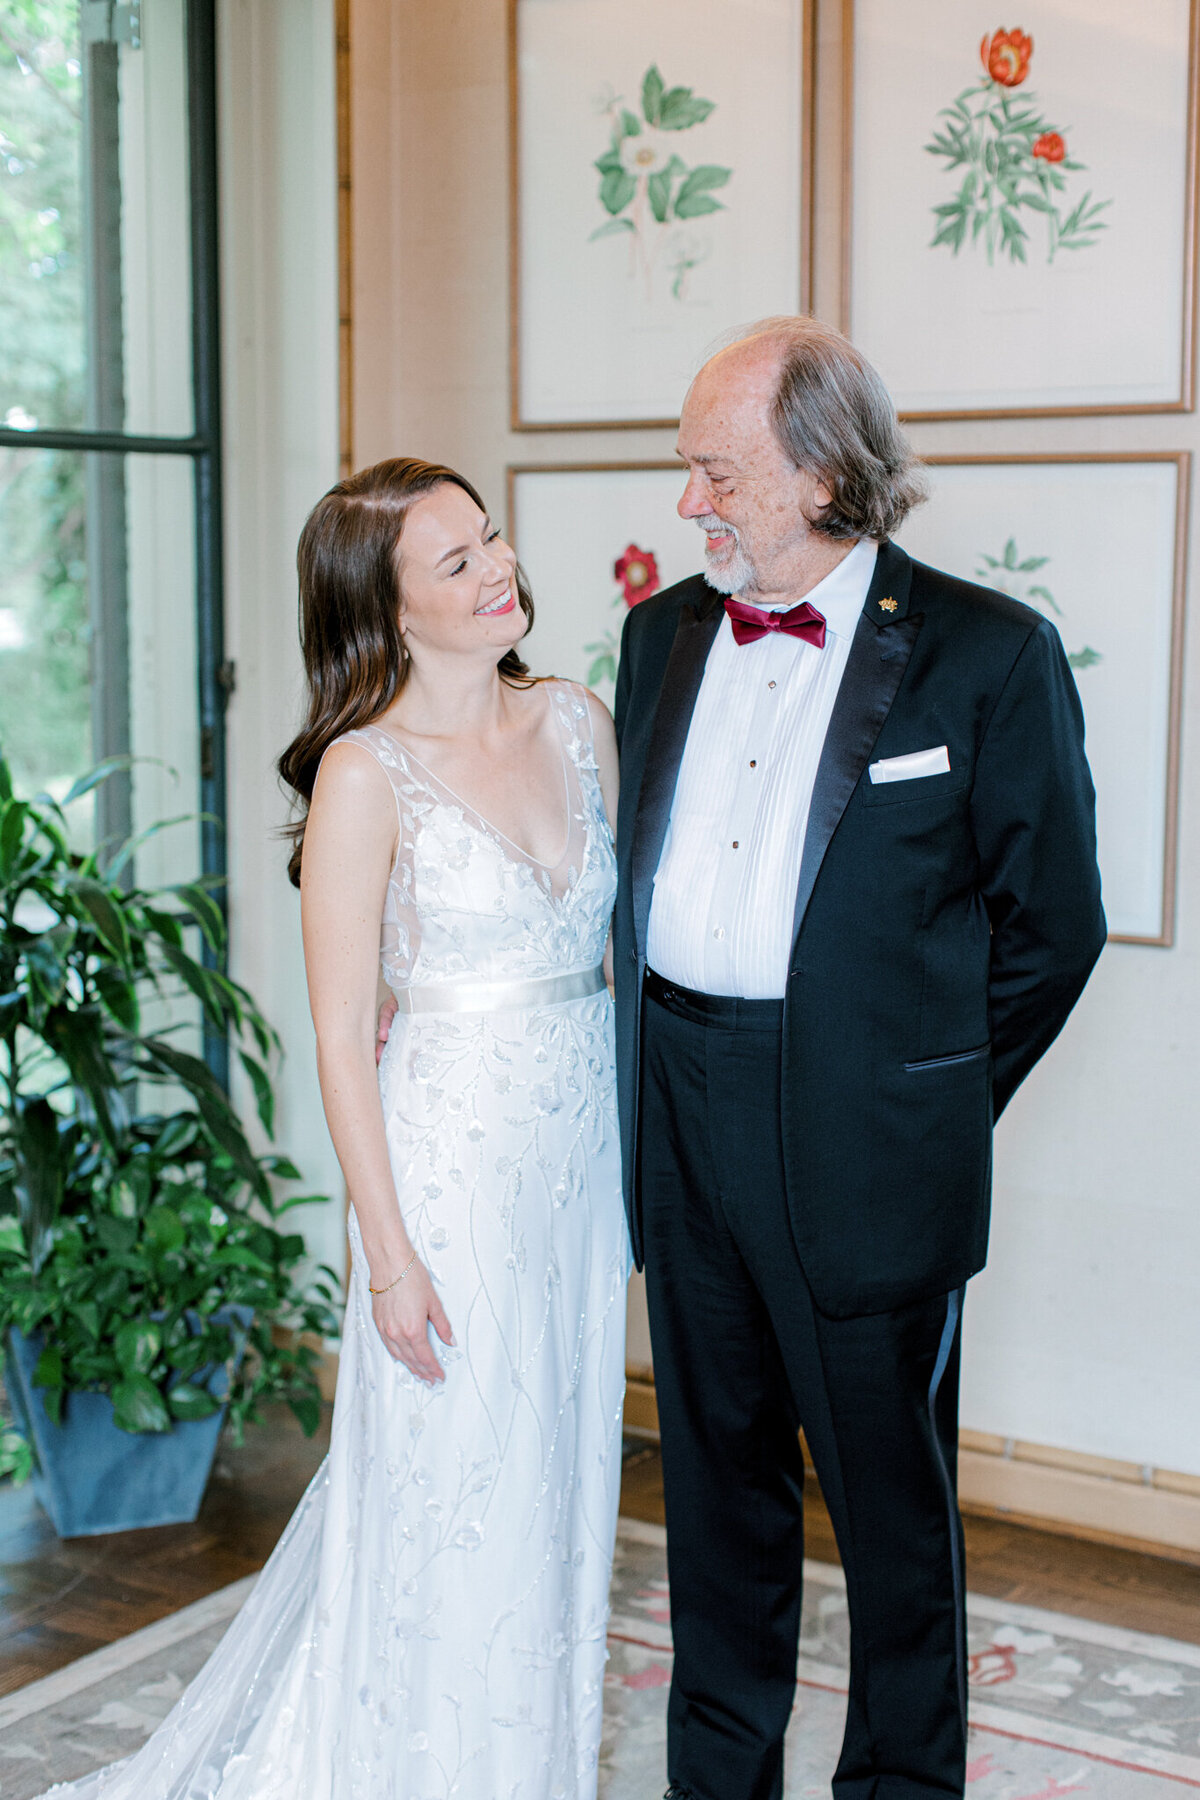 Gena & Matt's Wedding at the Dallas Arboretum | Dallas Wedding Photographer | Sami Kathryn Photography-61